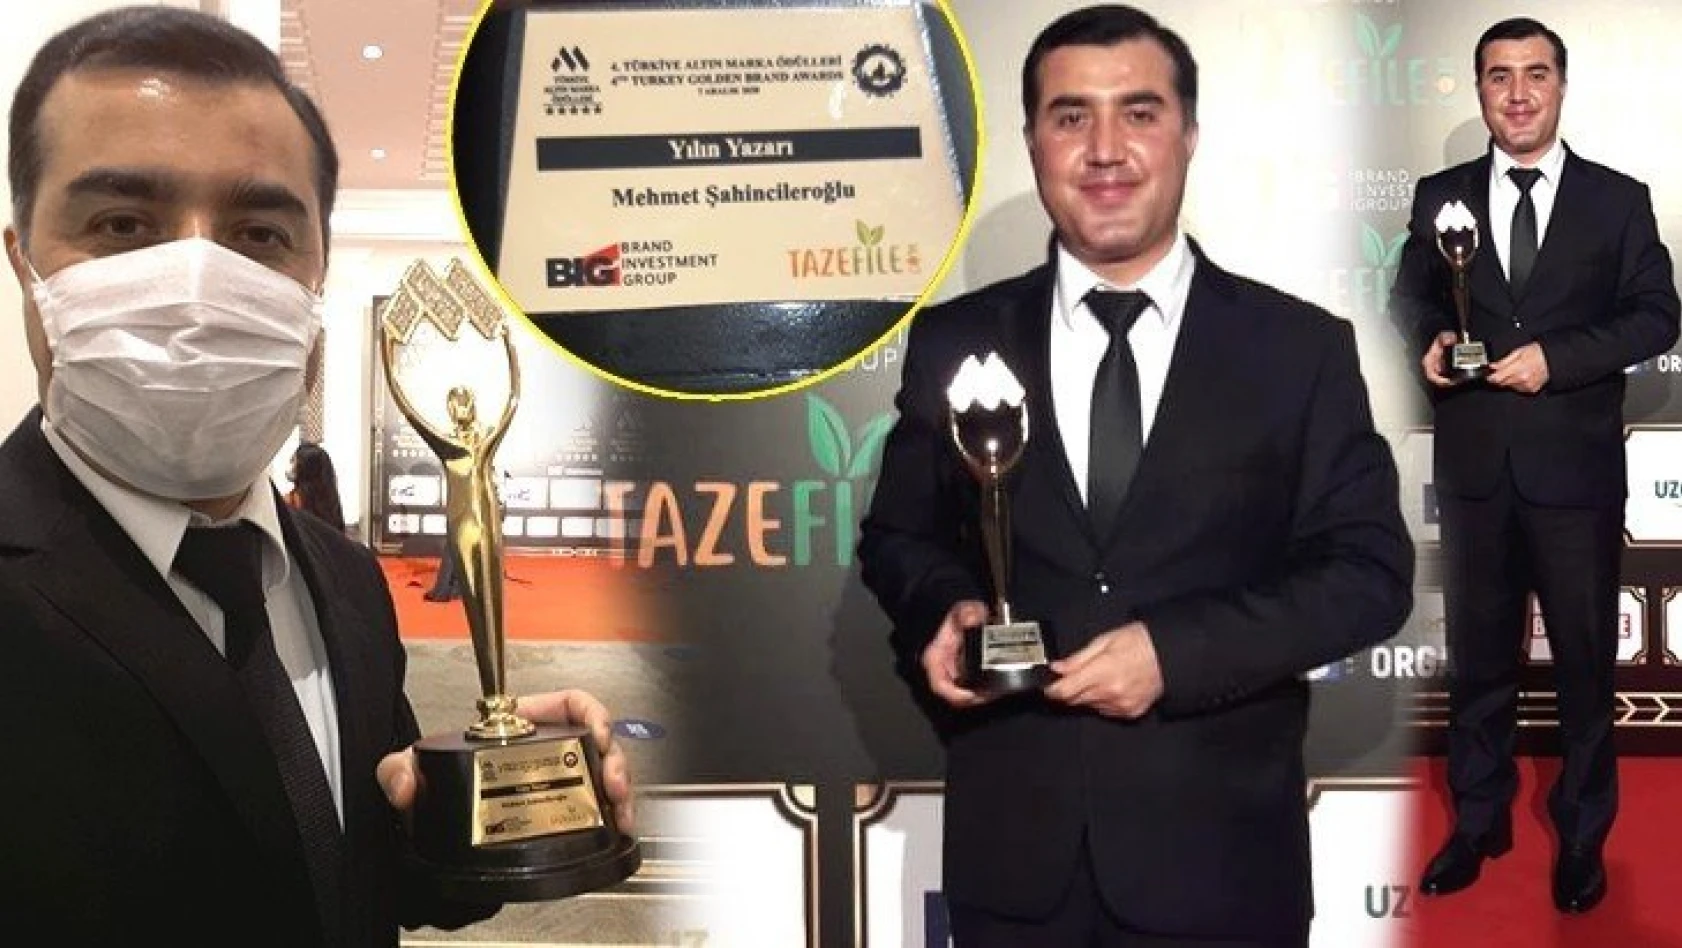 Gazeteci Yazar Mehmet Şahincileroğlu, 'Yılın Yazarı' ödülünü adı